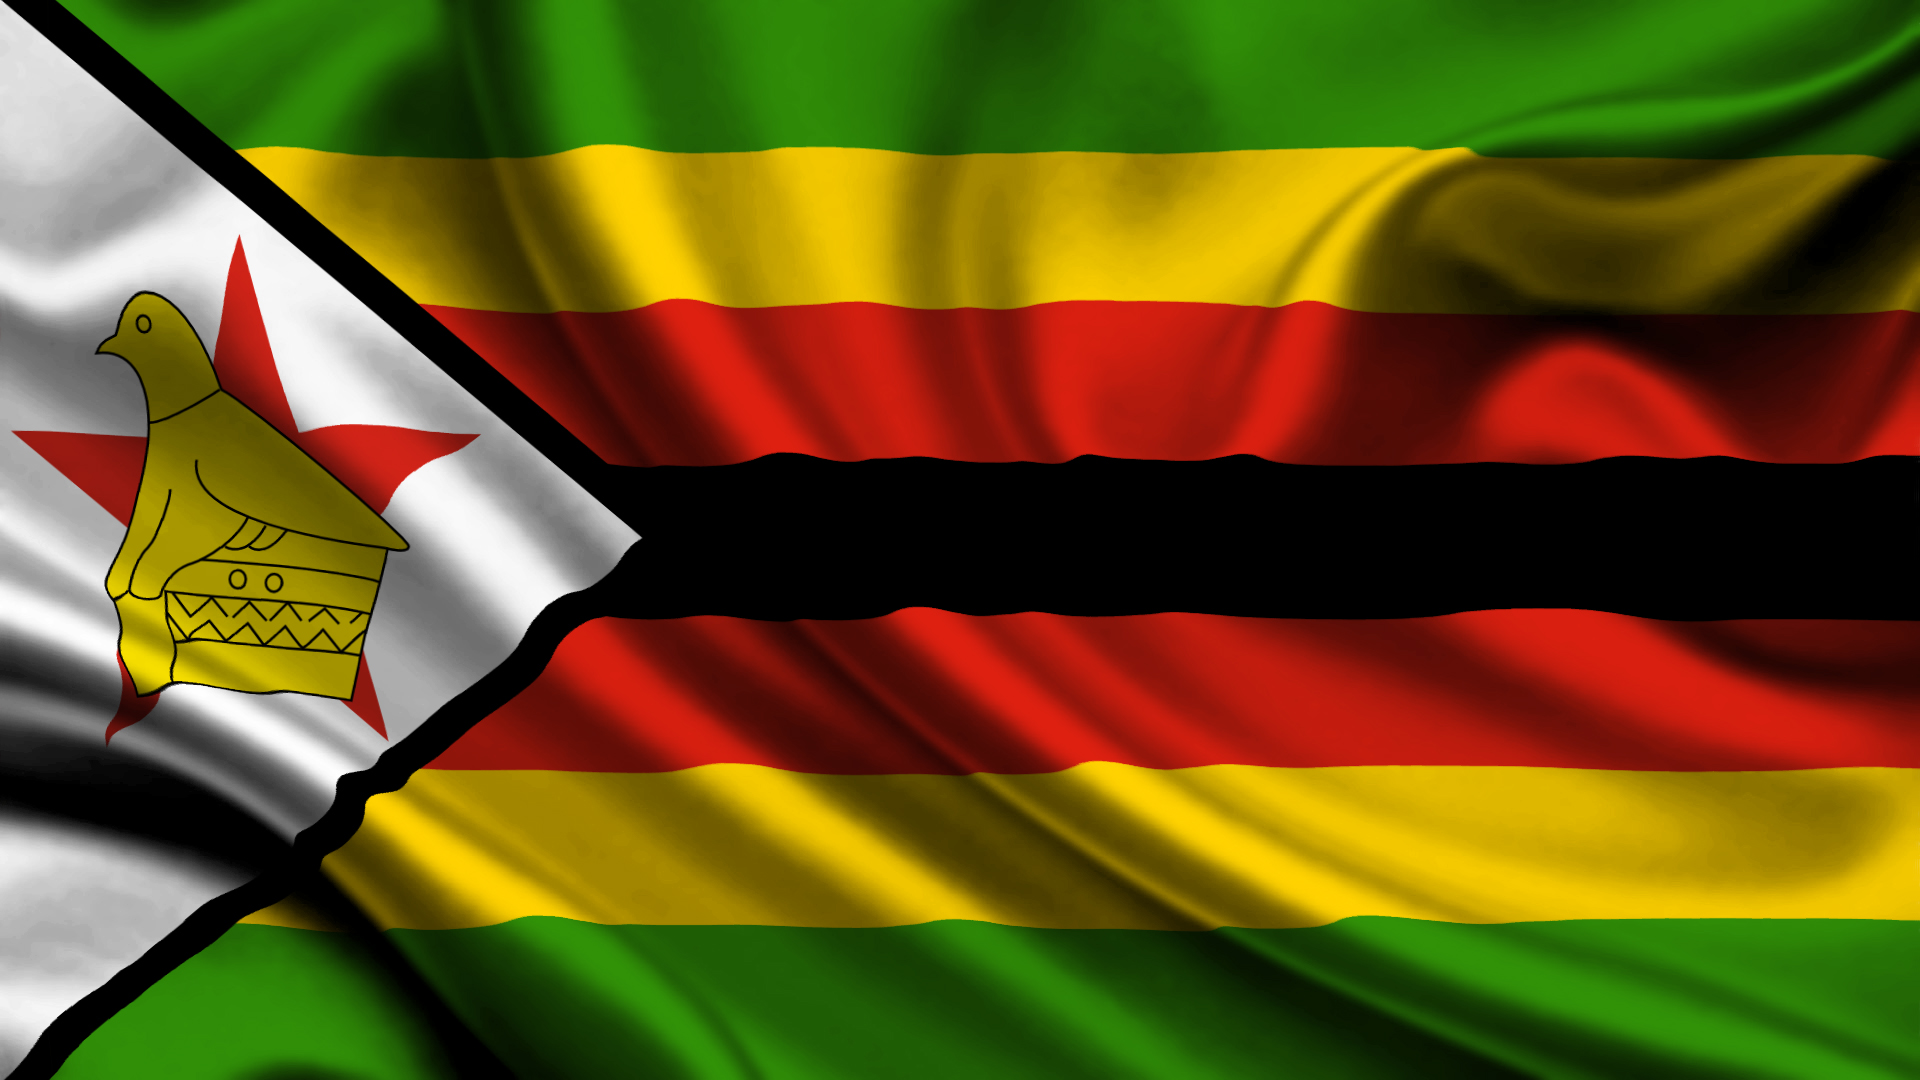 Скачать обои Флаг Зимбабве на телефон бесплатно